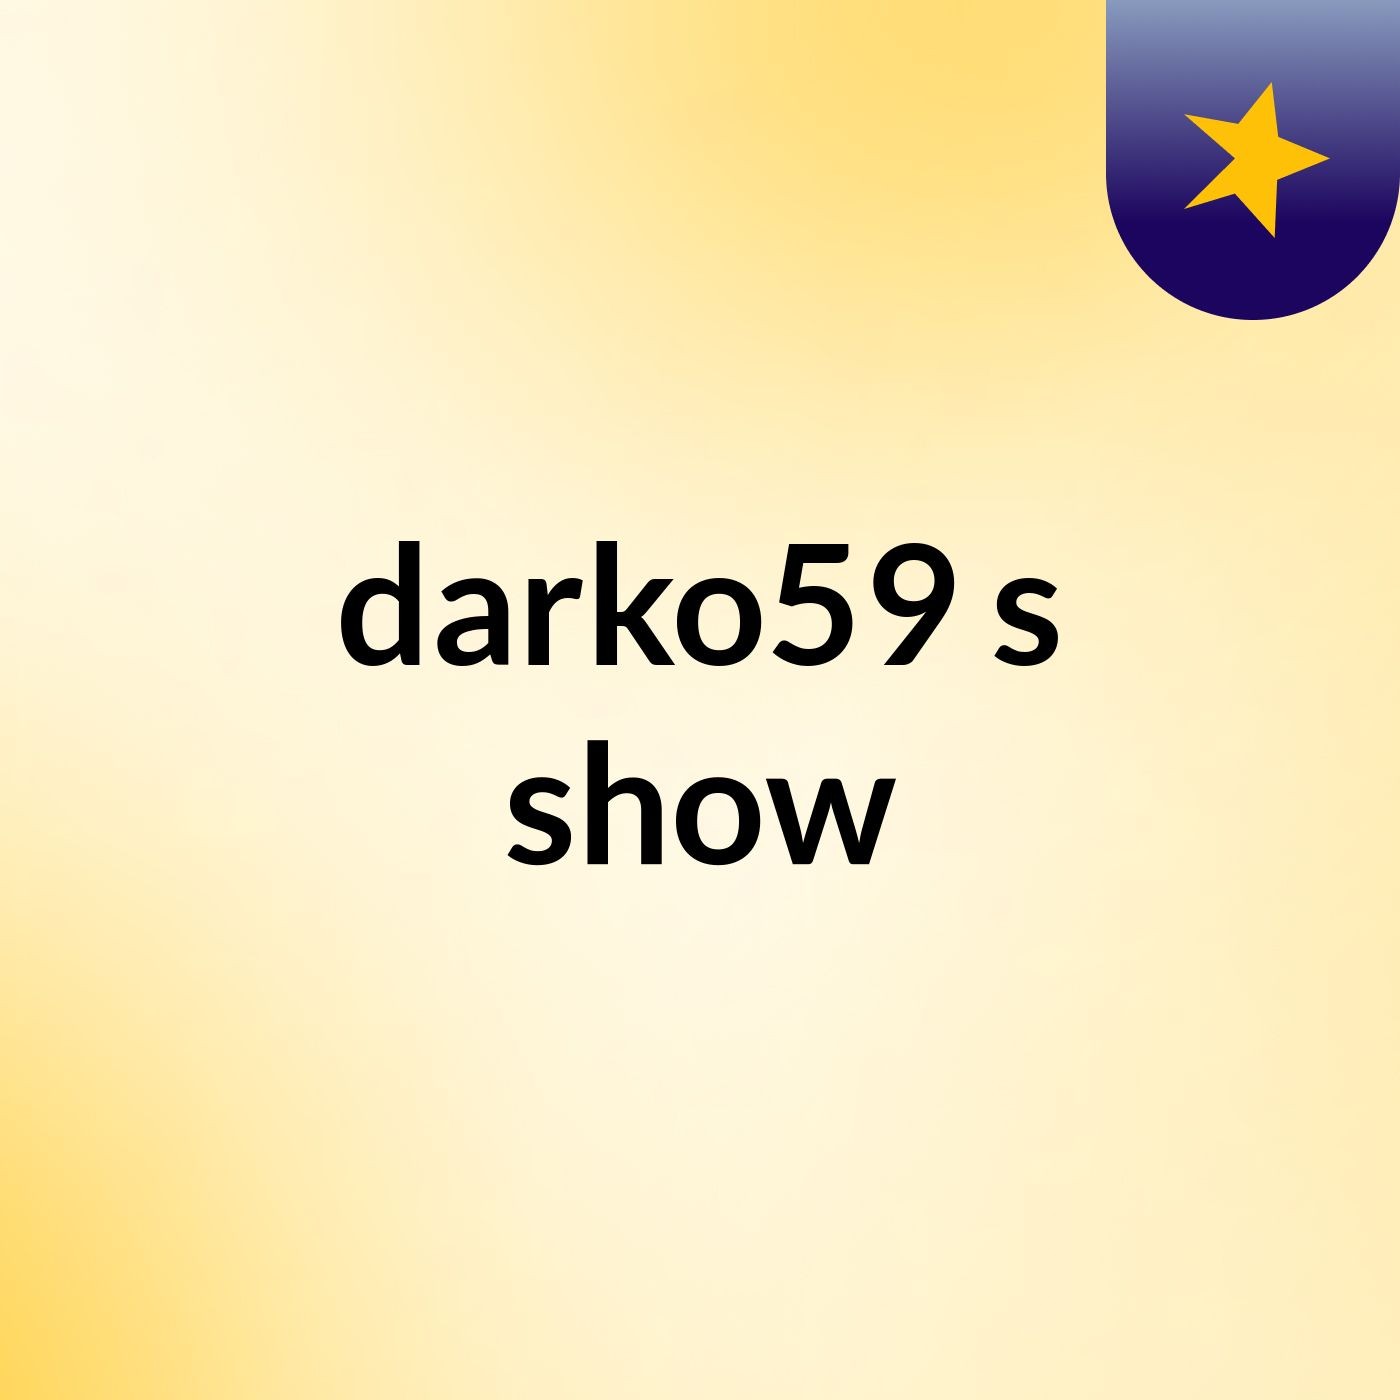 darko59's show